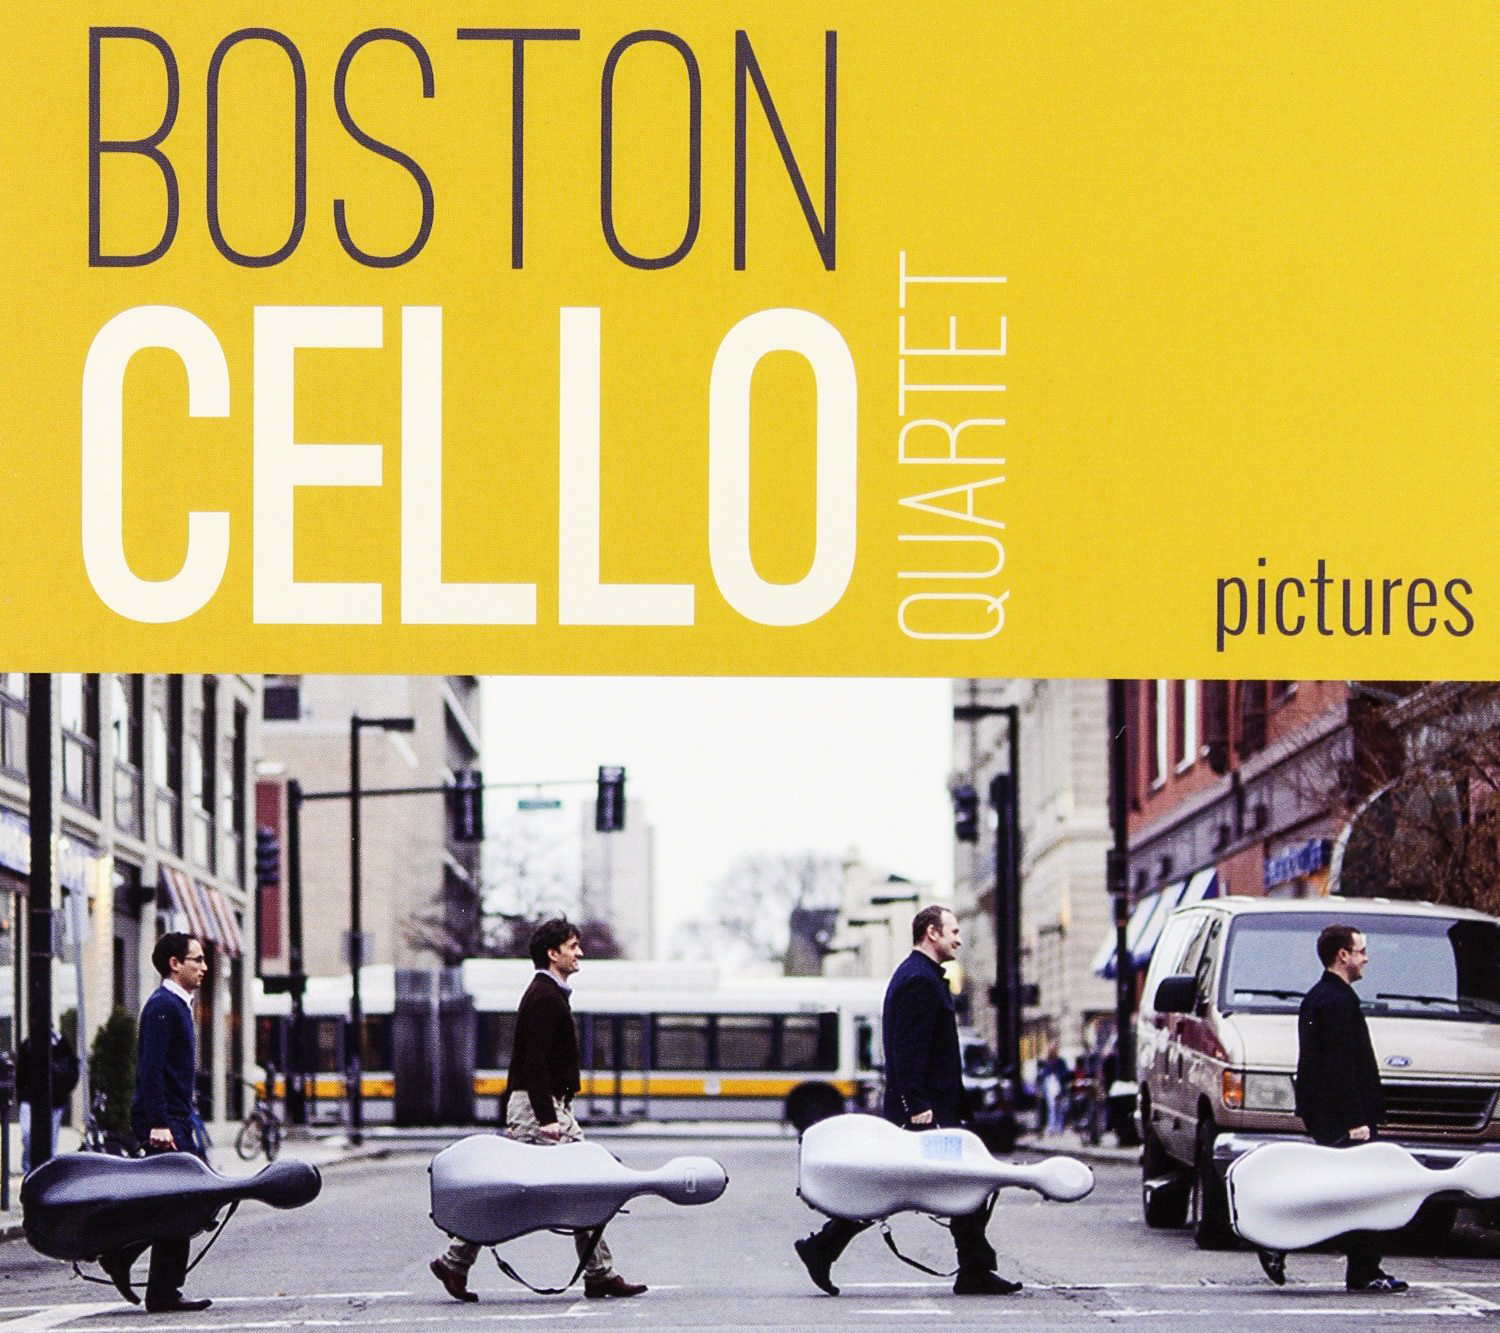 Boston cello